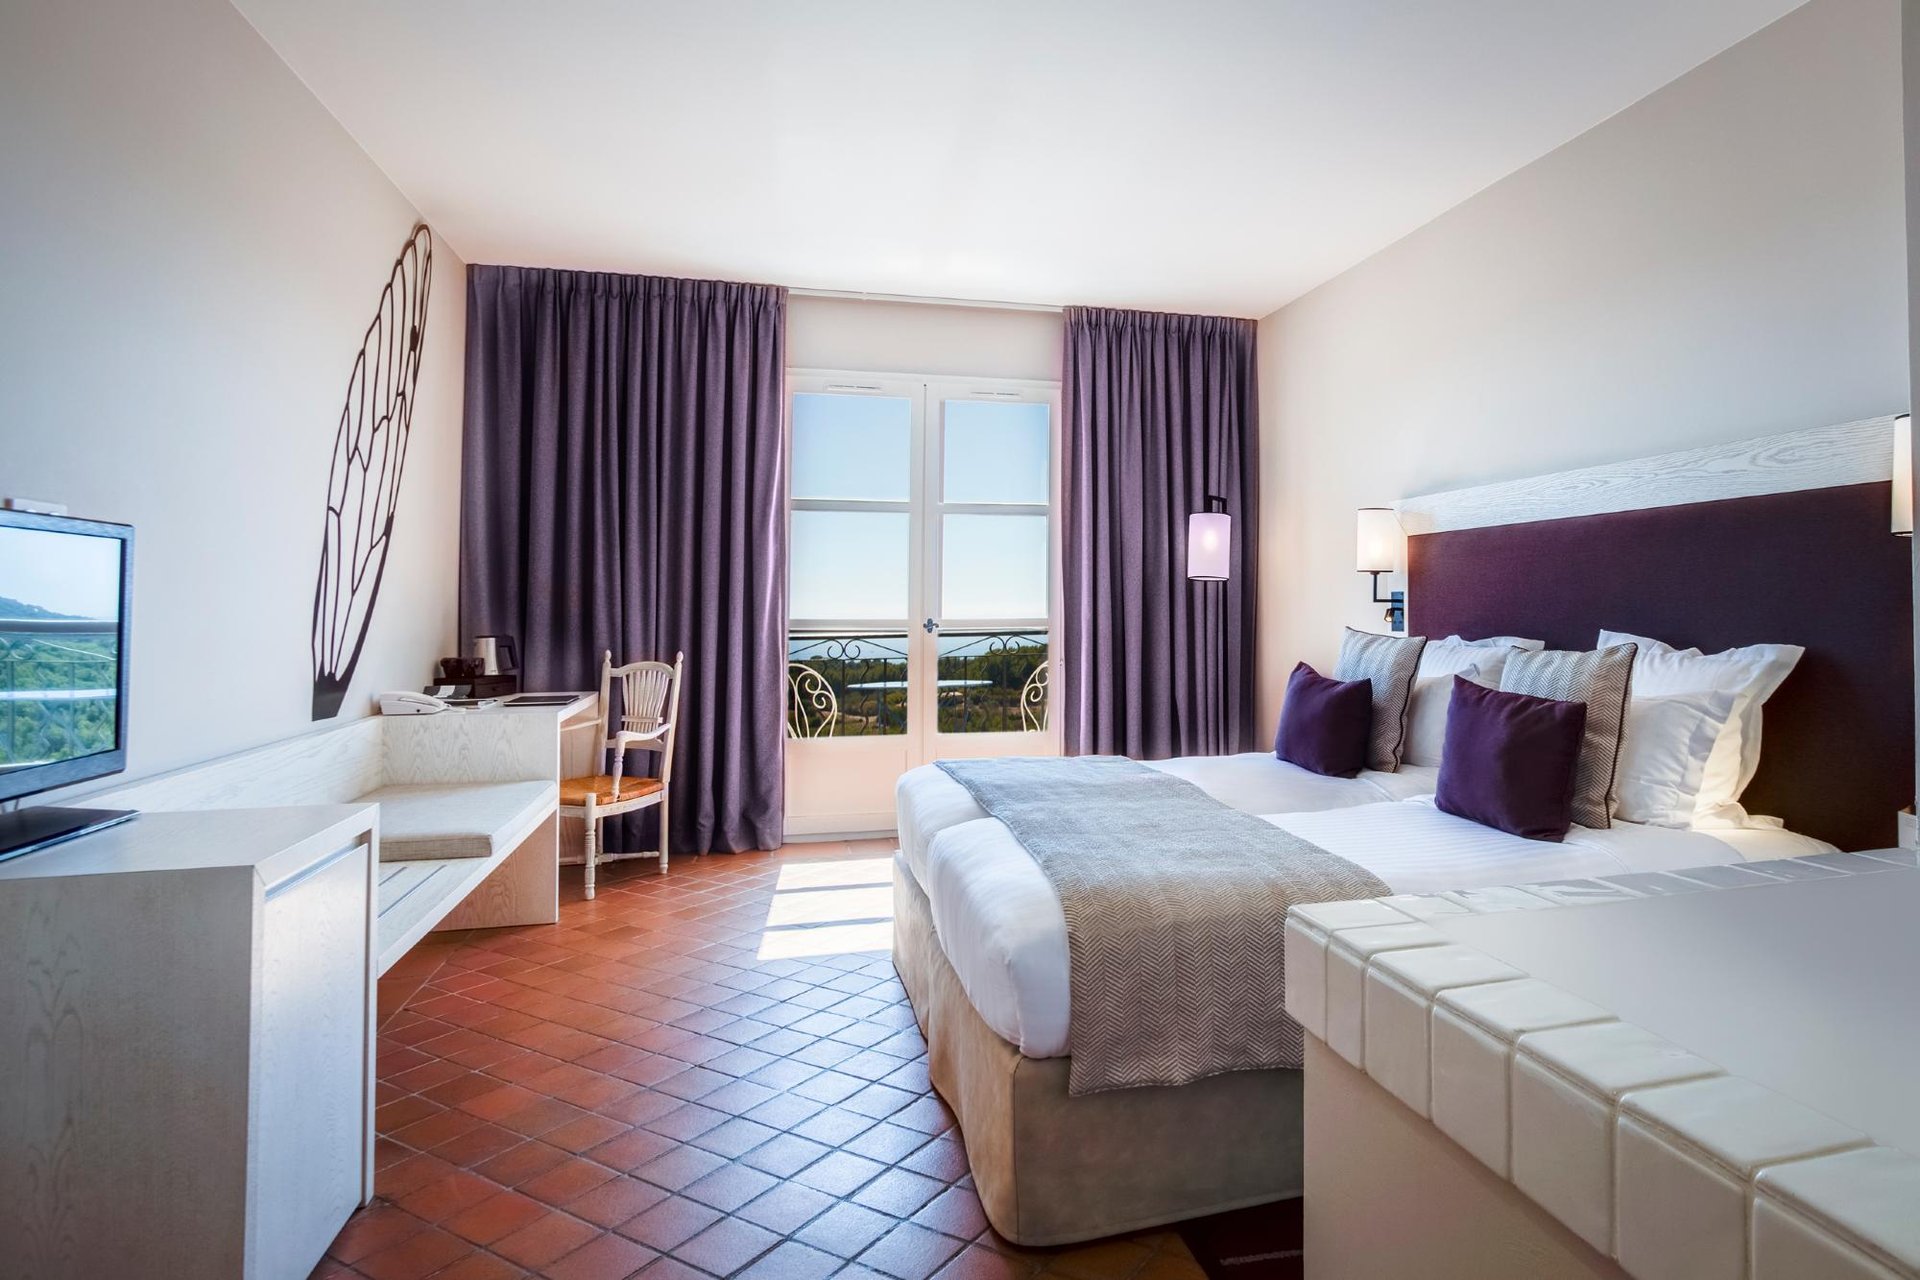 4-star hotel room in Saint-Cyr-sur-Mer near Bandol